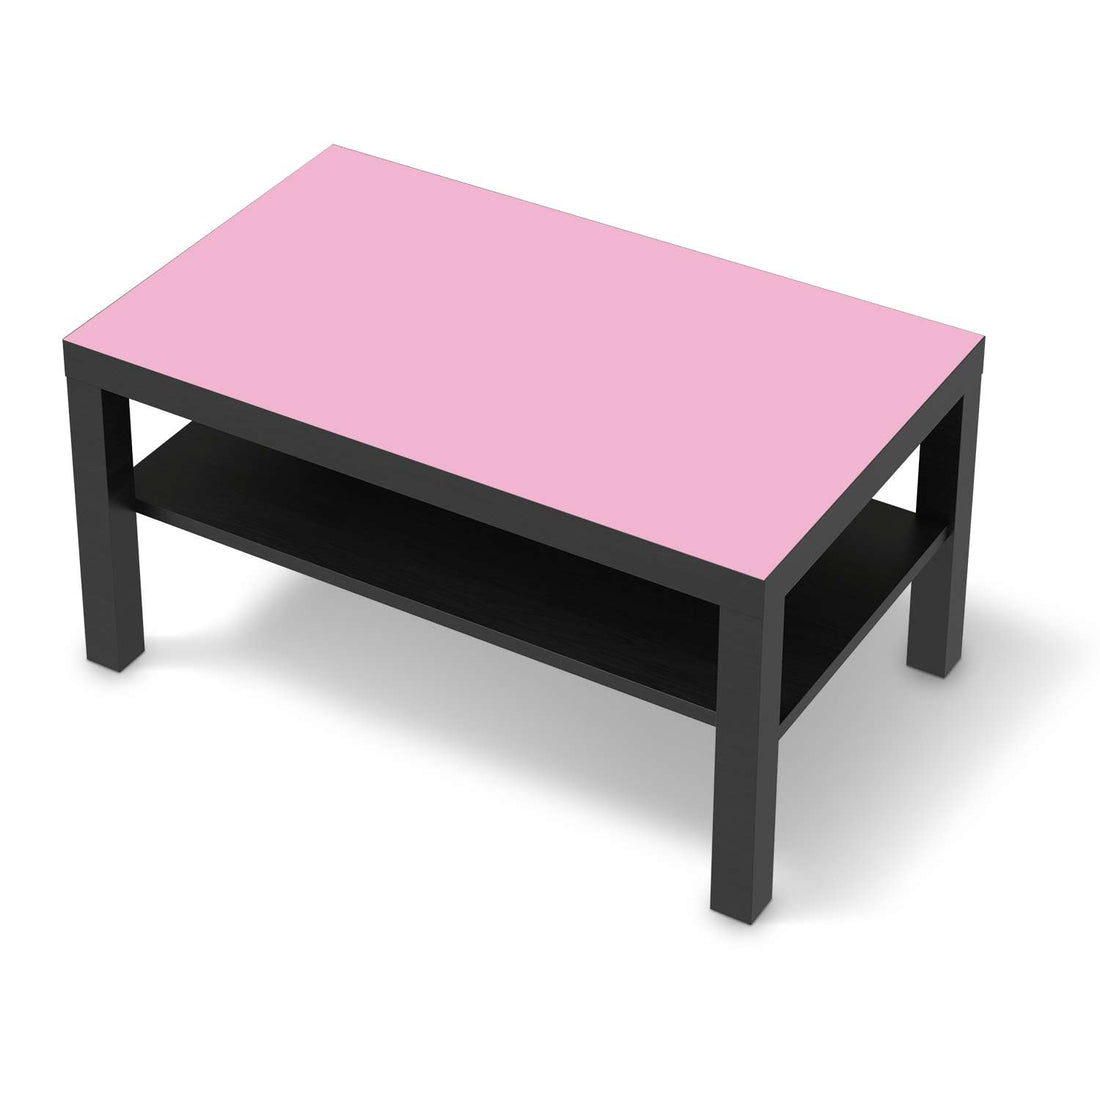 Möbelfolie Pink Light - IKEA Lack Tisch 90x55 cm - schwarz